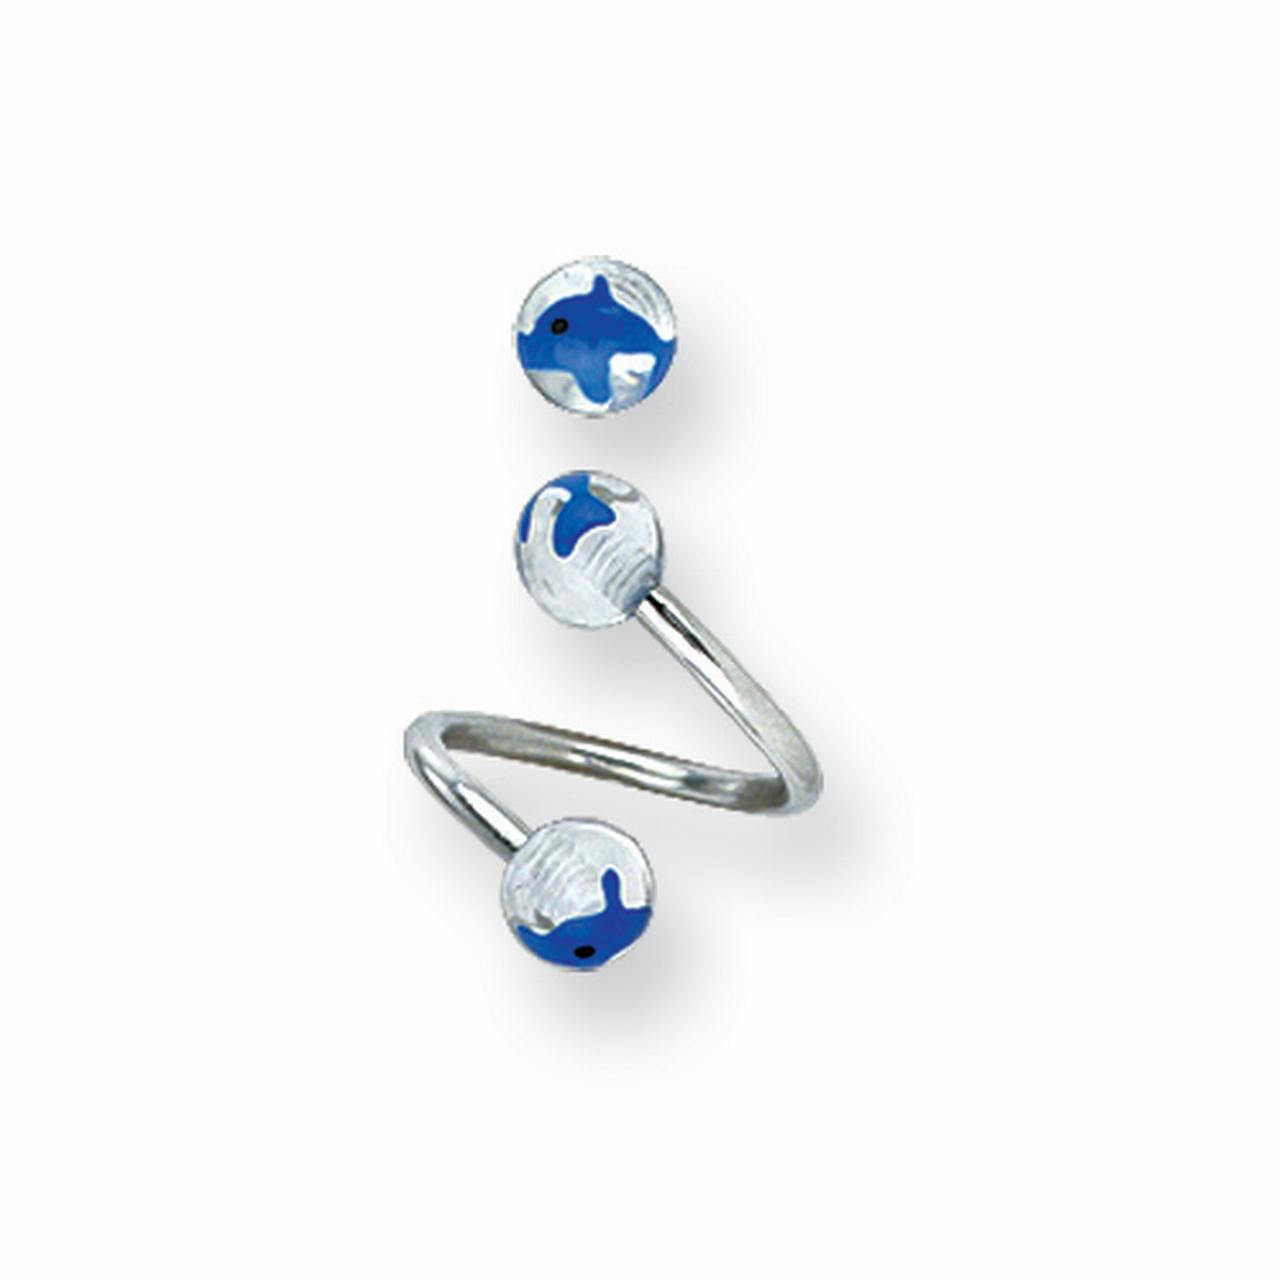 Jewelry by Sweet Pea 316L SRG GR SSTL 14G 3/8 in.5mm Acrylic Swirl Twistd Barbell